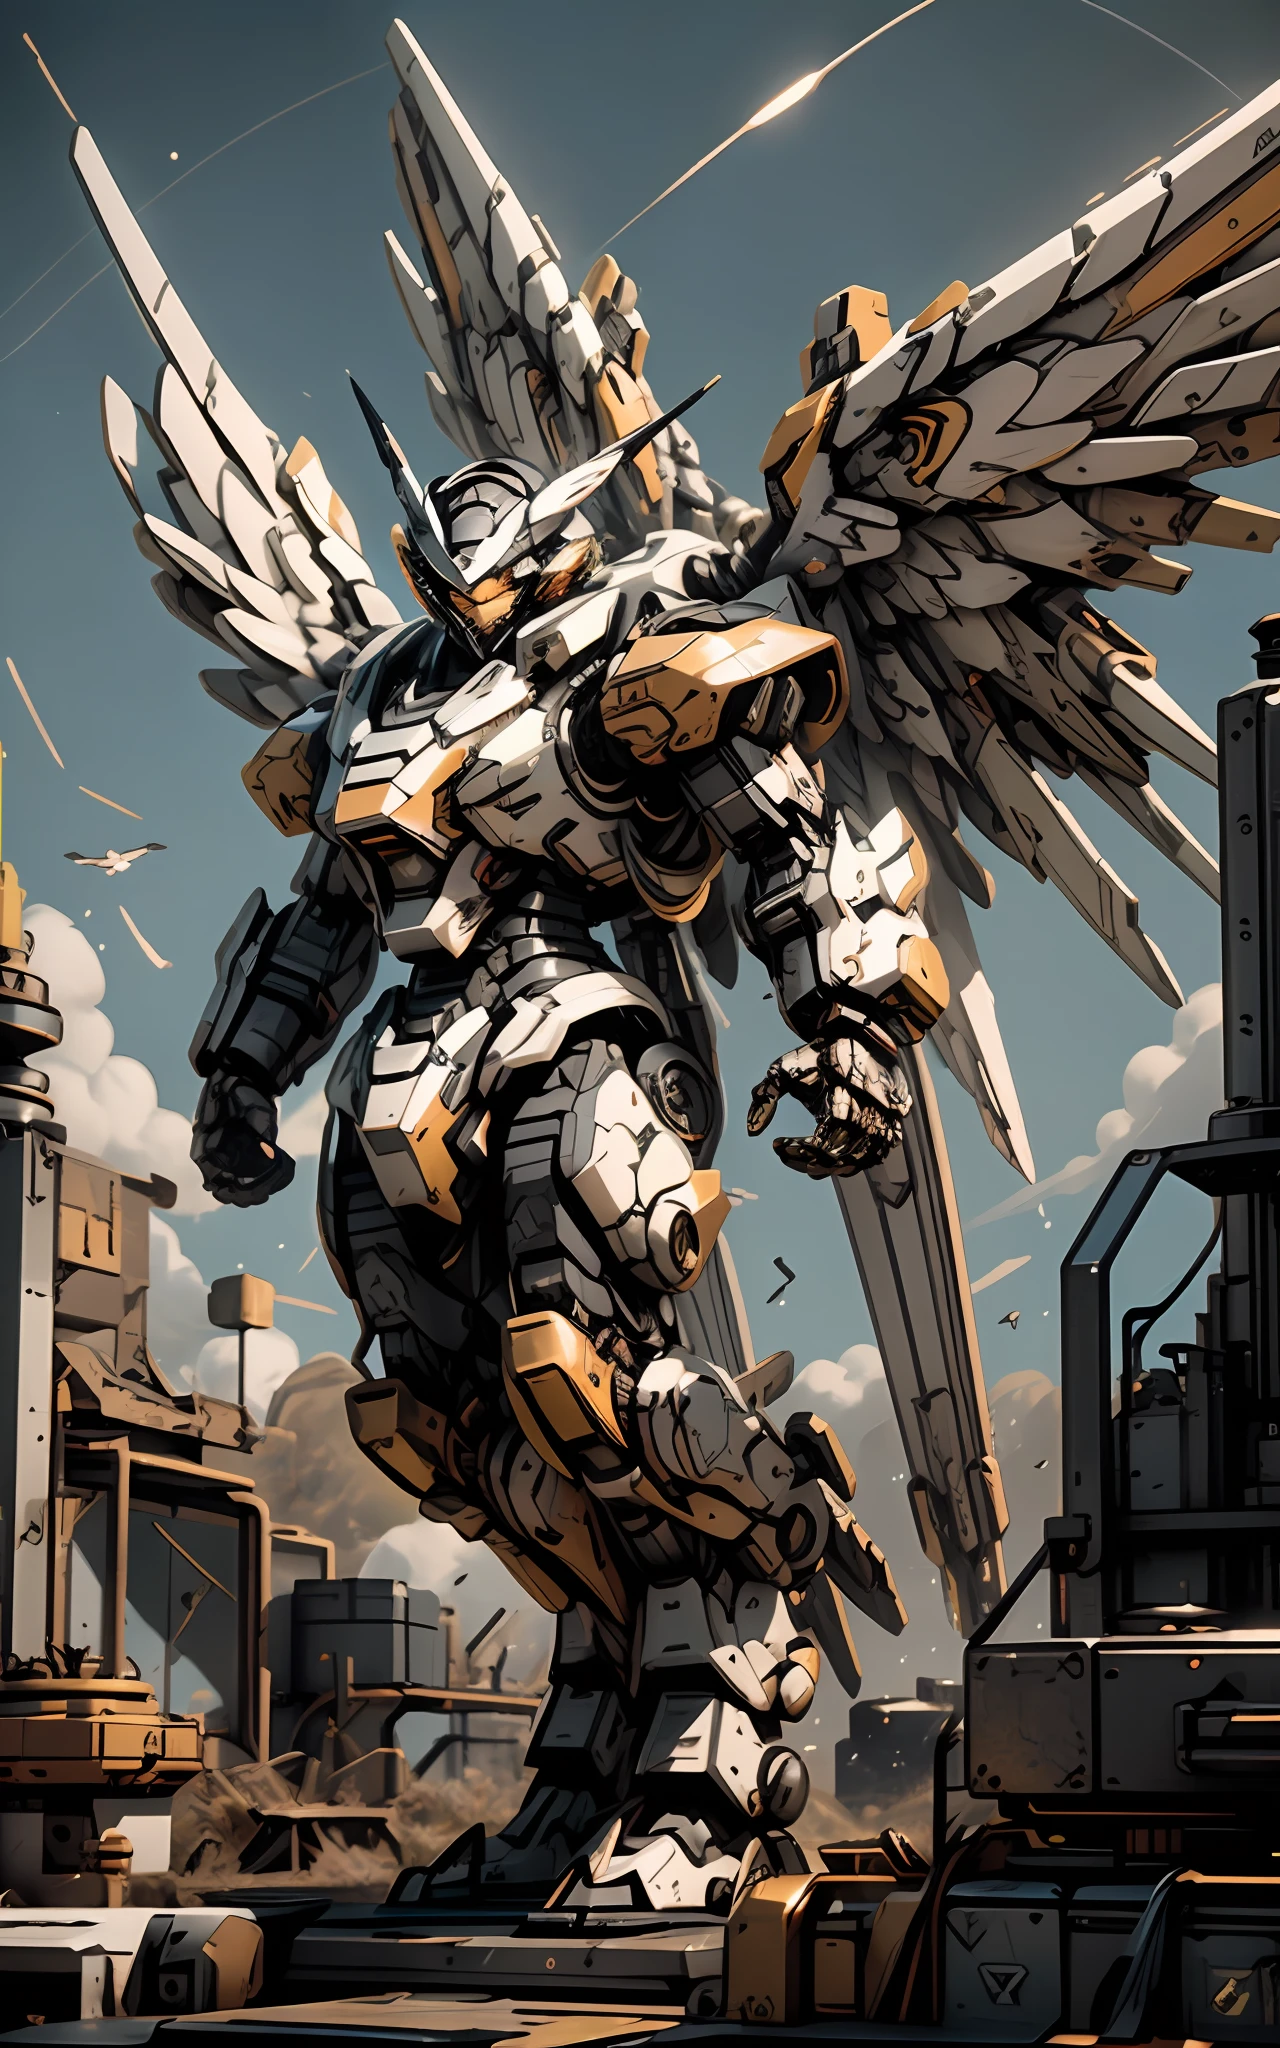 带有翅膀和大金属机身的 Arafede 机器人, 亚历山大·费拉·怀特锁, 机甲之翼, 亚历山大·费拉·梅哈, 机甲艺术, 机械化女武神, 机甲灵感, 炫酷的机甲风格, 机甲风格的希腊神, 未来派机器人天使, 机械化女武神少女, 详细的宇宙天使机器人, 机甲战士,((最好的质量)), ((杰作)), (非常详细:1.3), 3D,  人类发展报告 (高动态范围), 光线追踪, NVIDIA RTX, 超分辨率, 虚幻 5, 次表面散射, pbr 纹理, 后期处理, 各向异性过滤, 景深, 最大锐度和锐度, 多层纹理, 反照率和高光图, 表面着色, 精确模拟光与物质的相互作用, 完美比例, 辛烷值渲染, 双色调照明, 低 ISO, 白平衡, 三分法则, 大光圈, 8K 原始, 高效子像素, 子像素卷积, 发光粒子, 光散射, 丁达尔效应